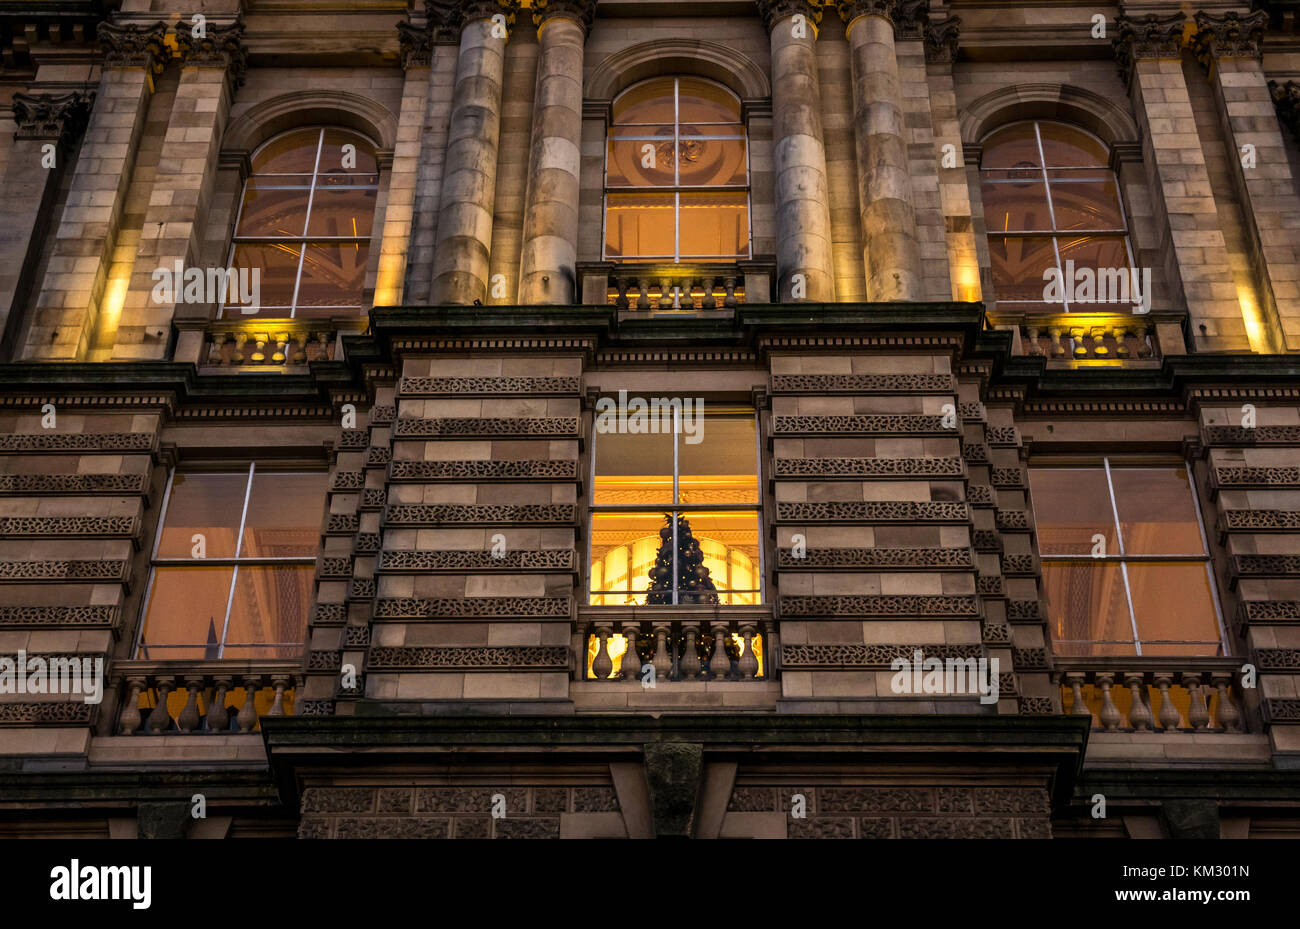 Cerca del edificio victoriano, sede del Bank of Scotland, el montículo, iluminado al anochecer con el árbol de Navidad en la ventana, Edimburgo, Escocia, Reino Unido Foto de stock